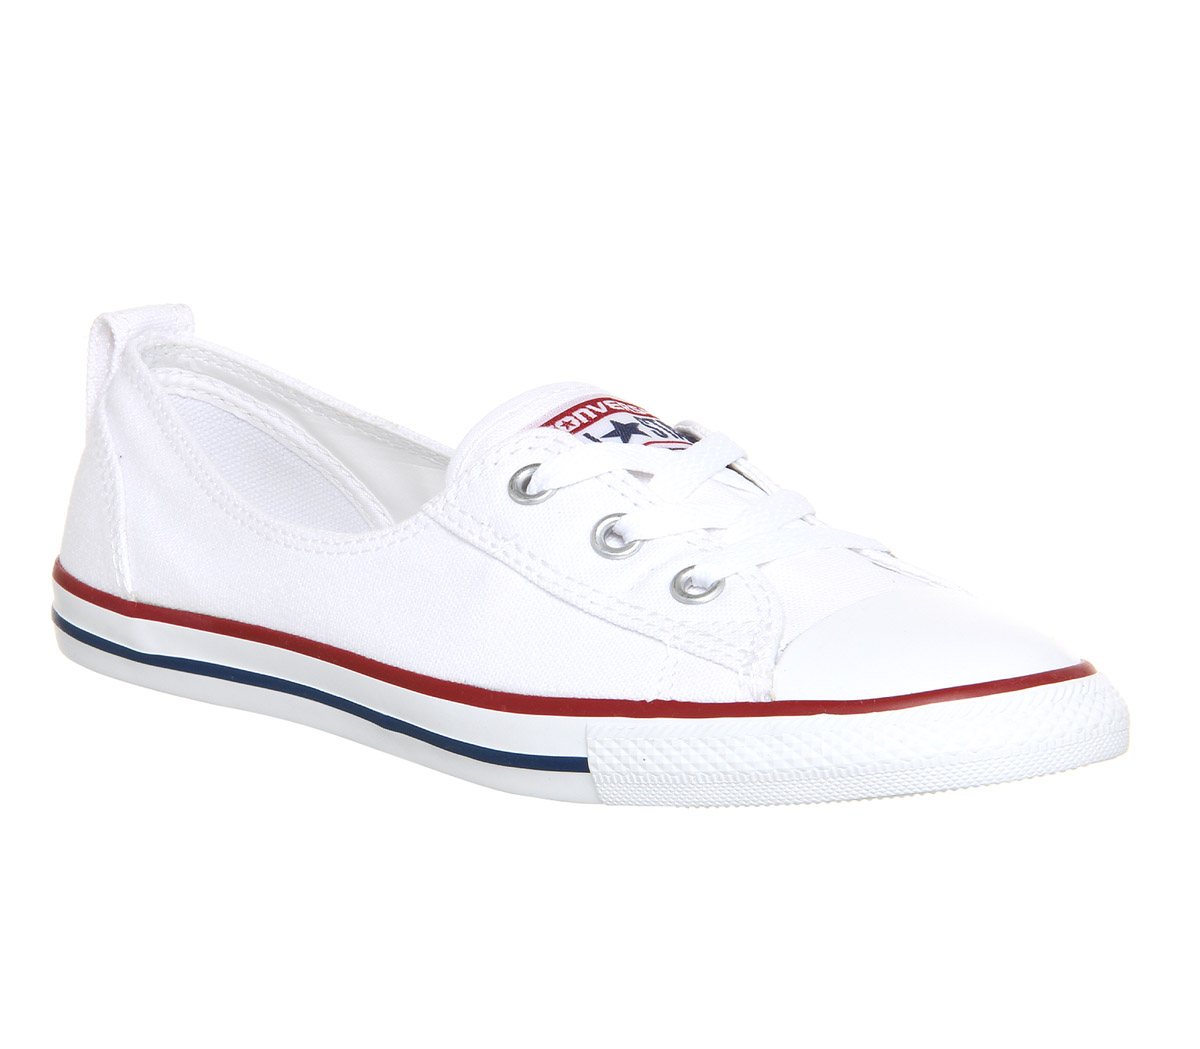 white converse junior size 5.5